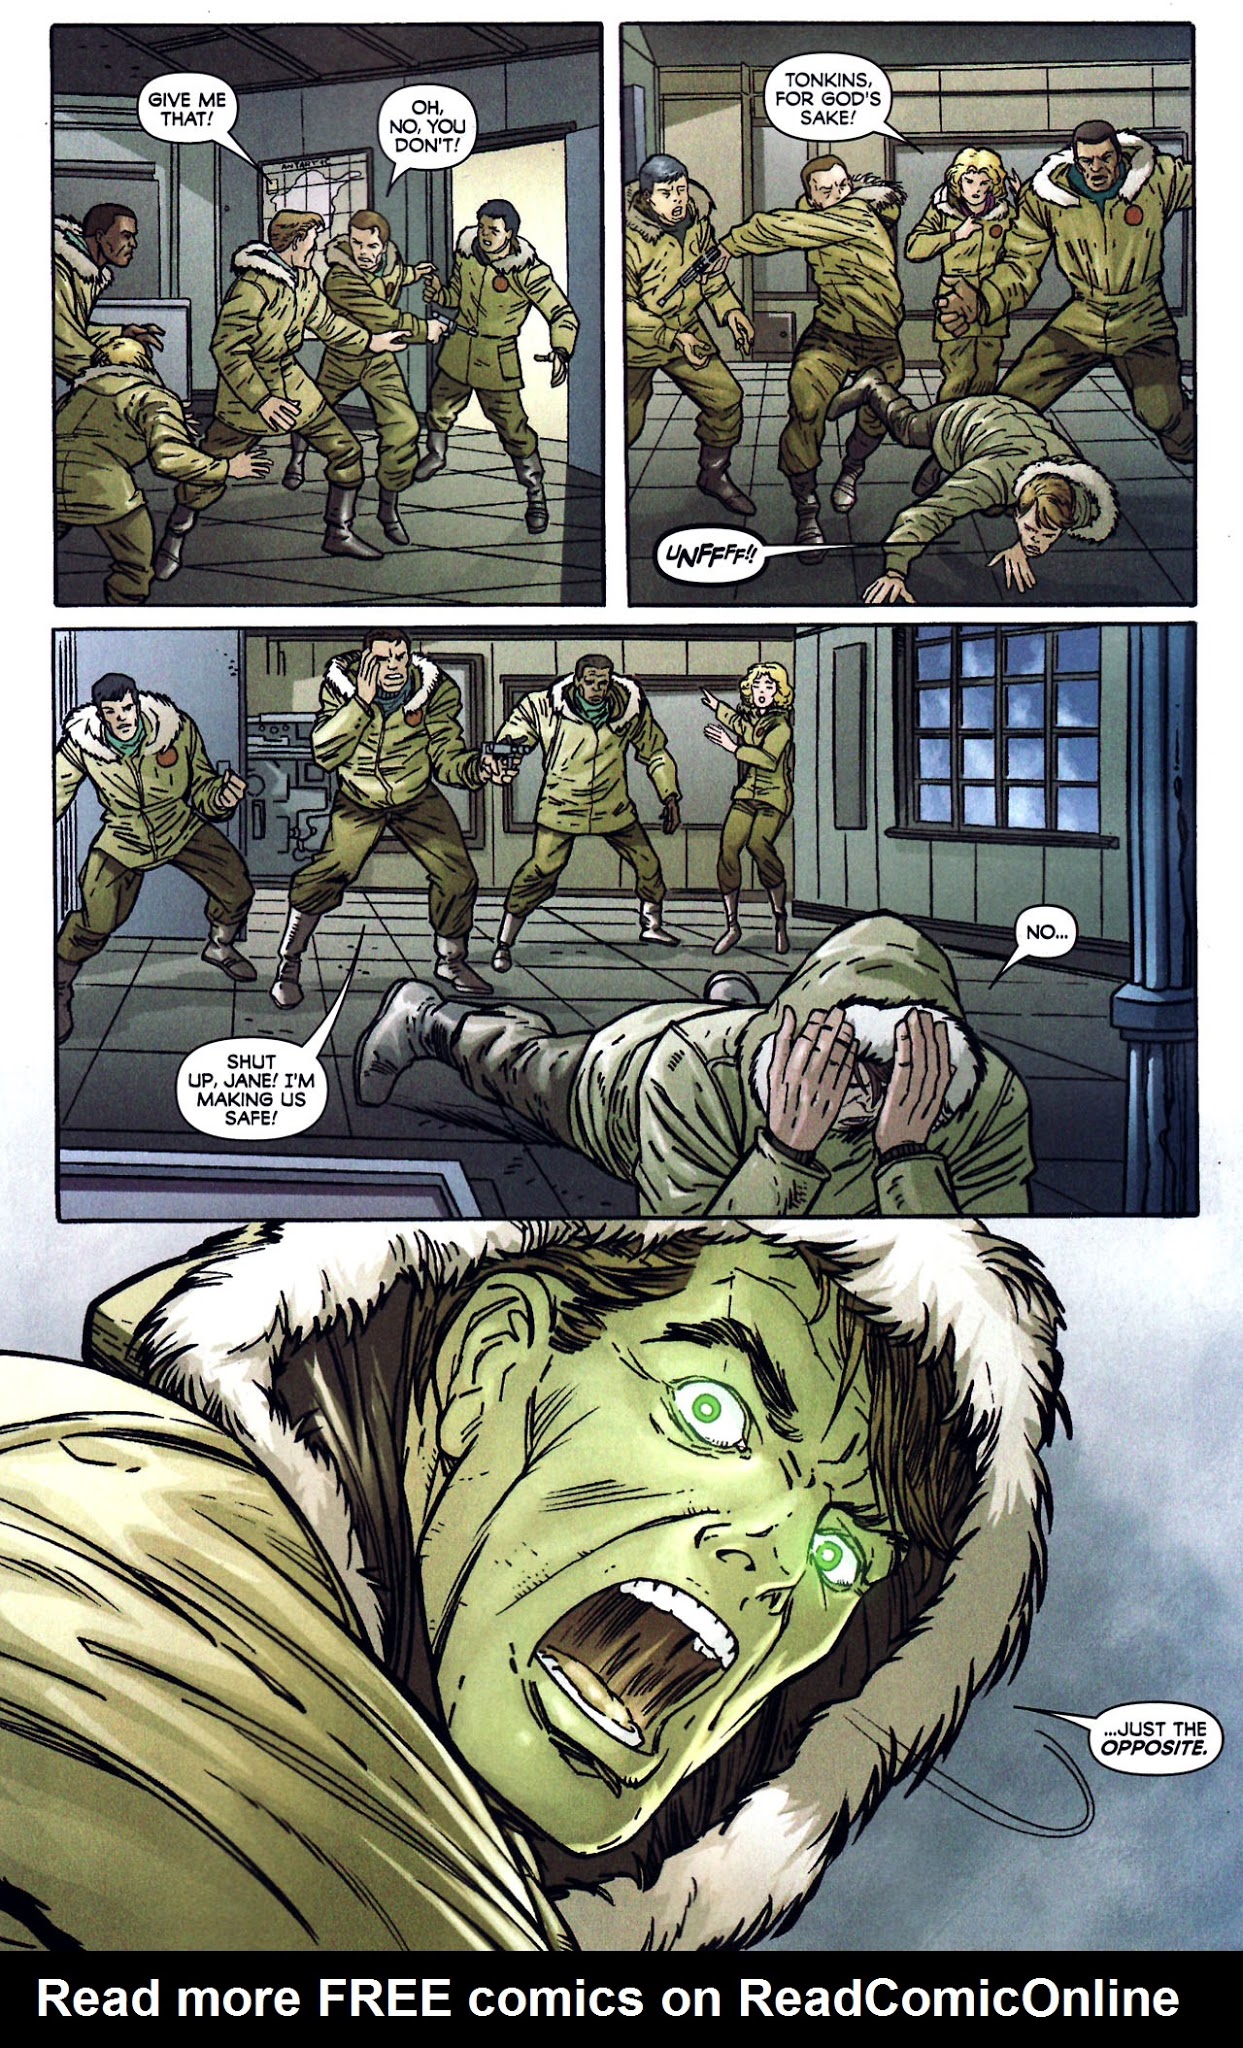 Read online Hulk vs. Fin Fang Foom comic -  Issue # Full - 15